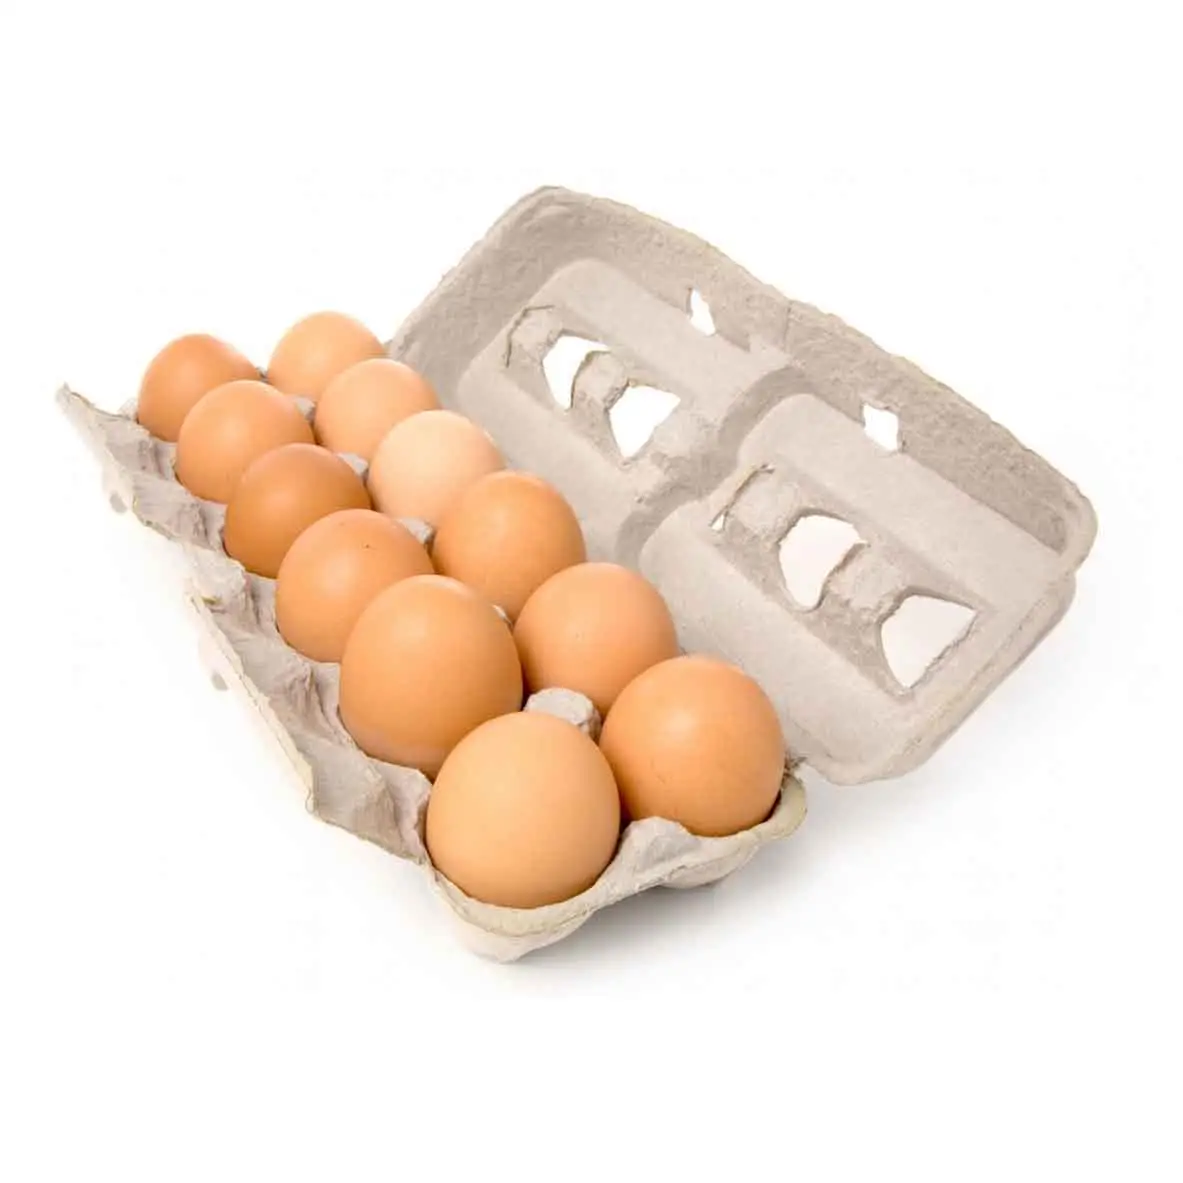 जैविक सफेद ताजा चिकन टेबल अंडे/ताजा चिकन